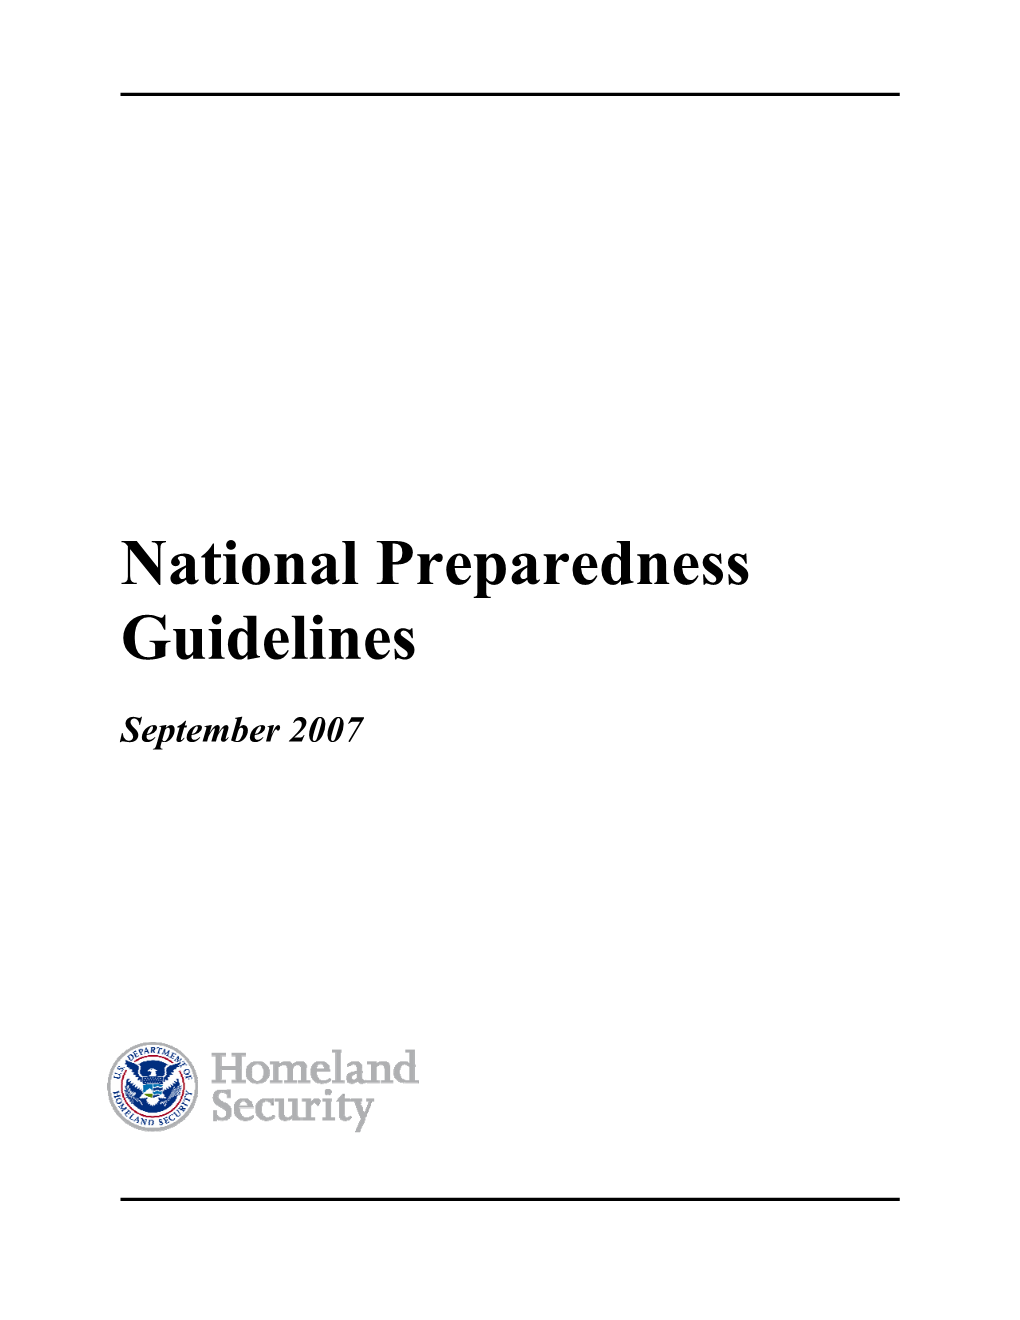 National Preparedness Guidelines